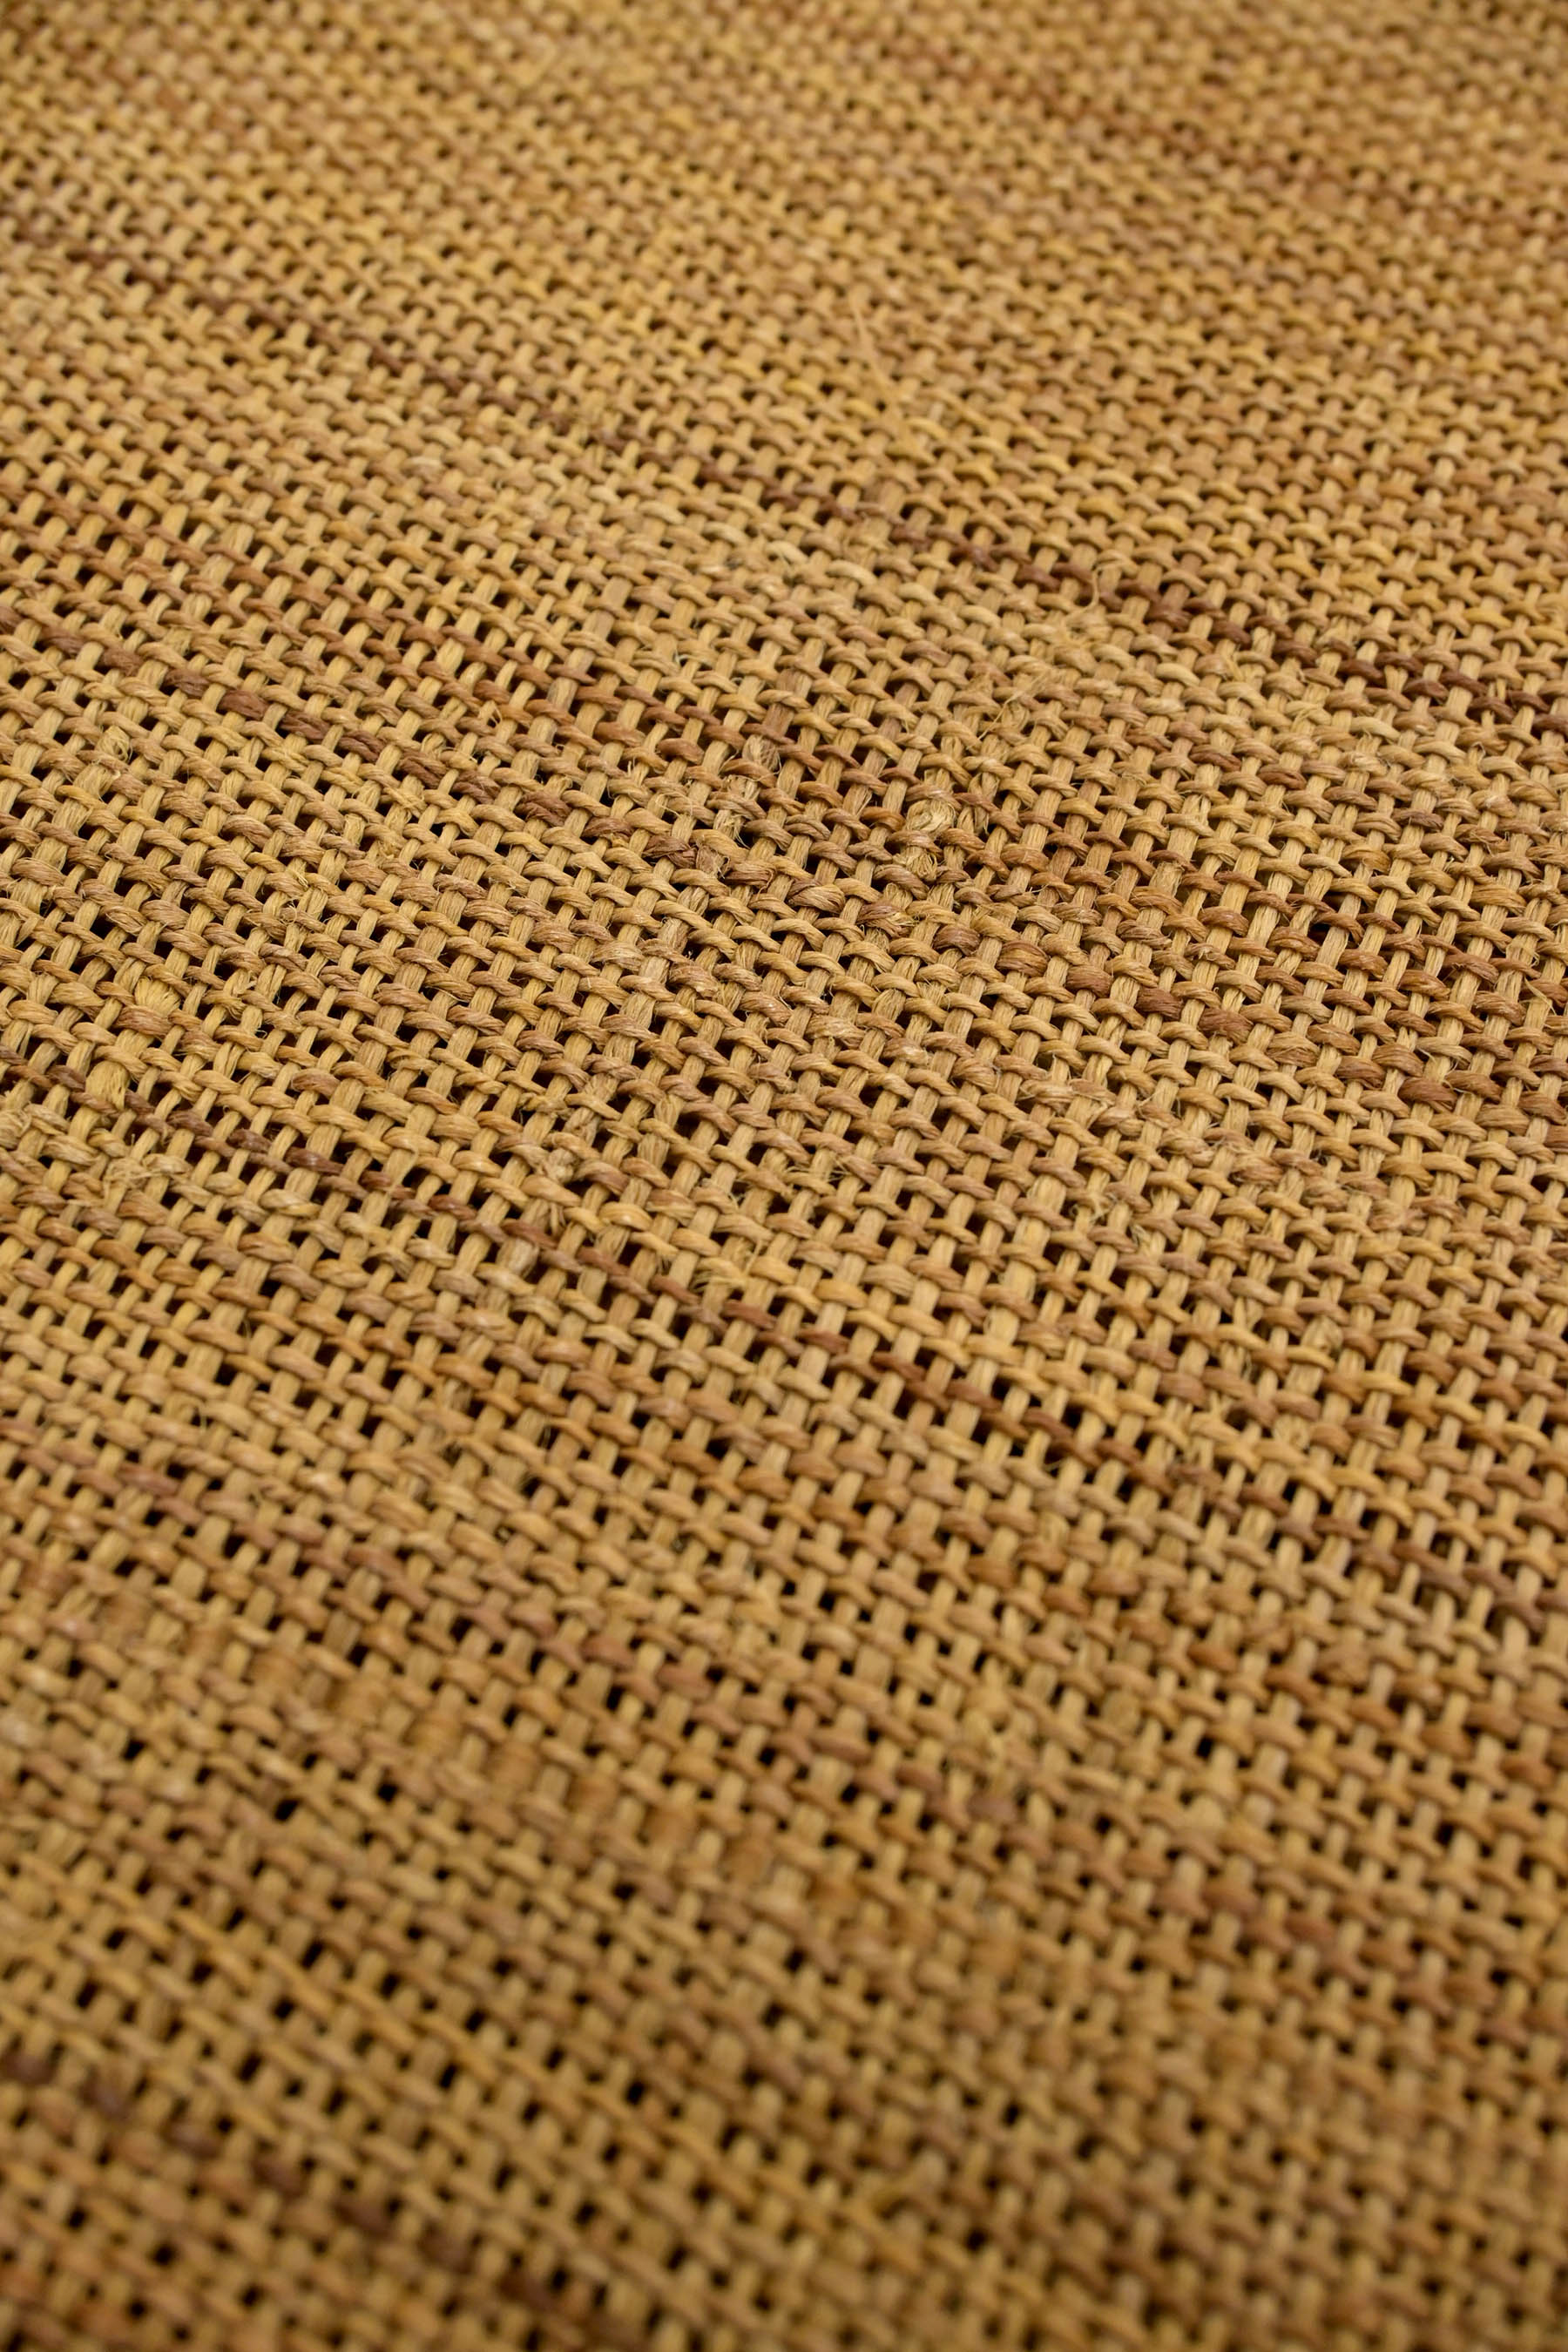 古代原始布 自然布 科布 八寸 名古屋帯 7/16迄の出品になります 